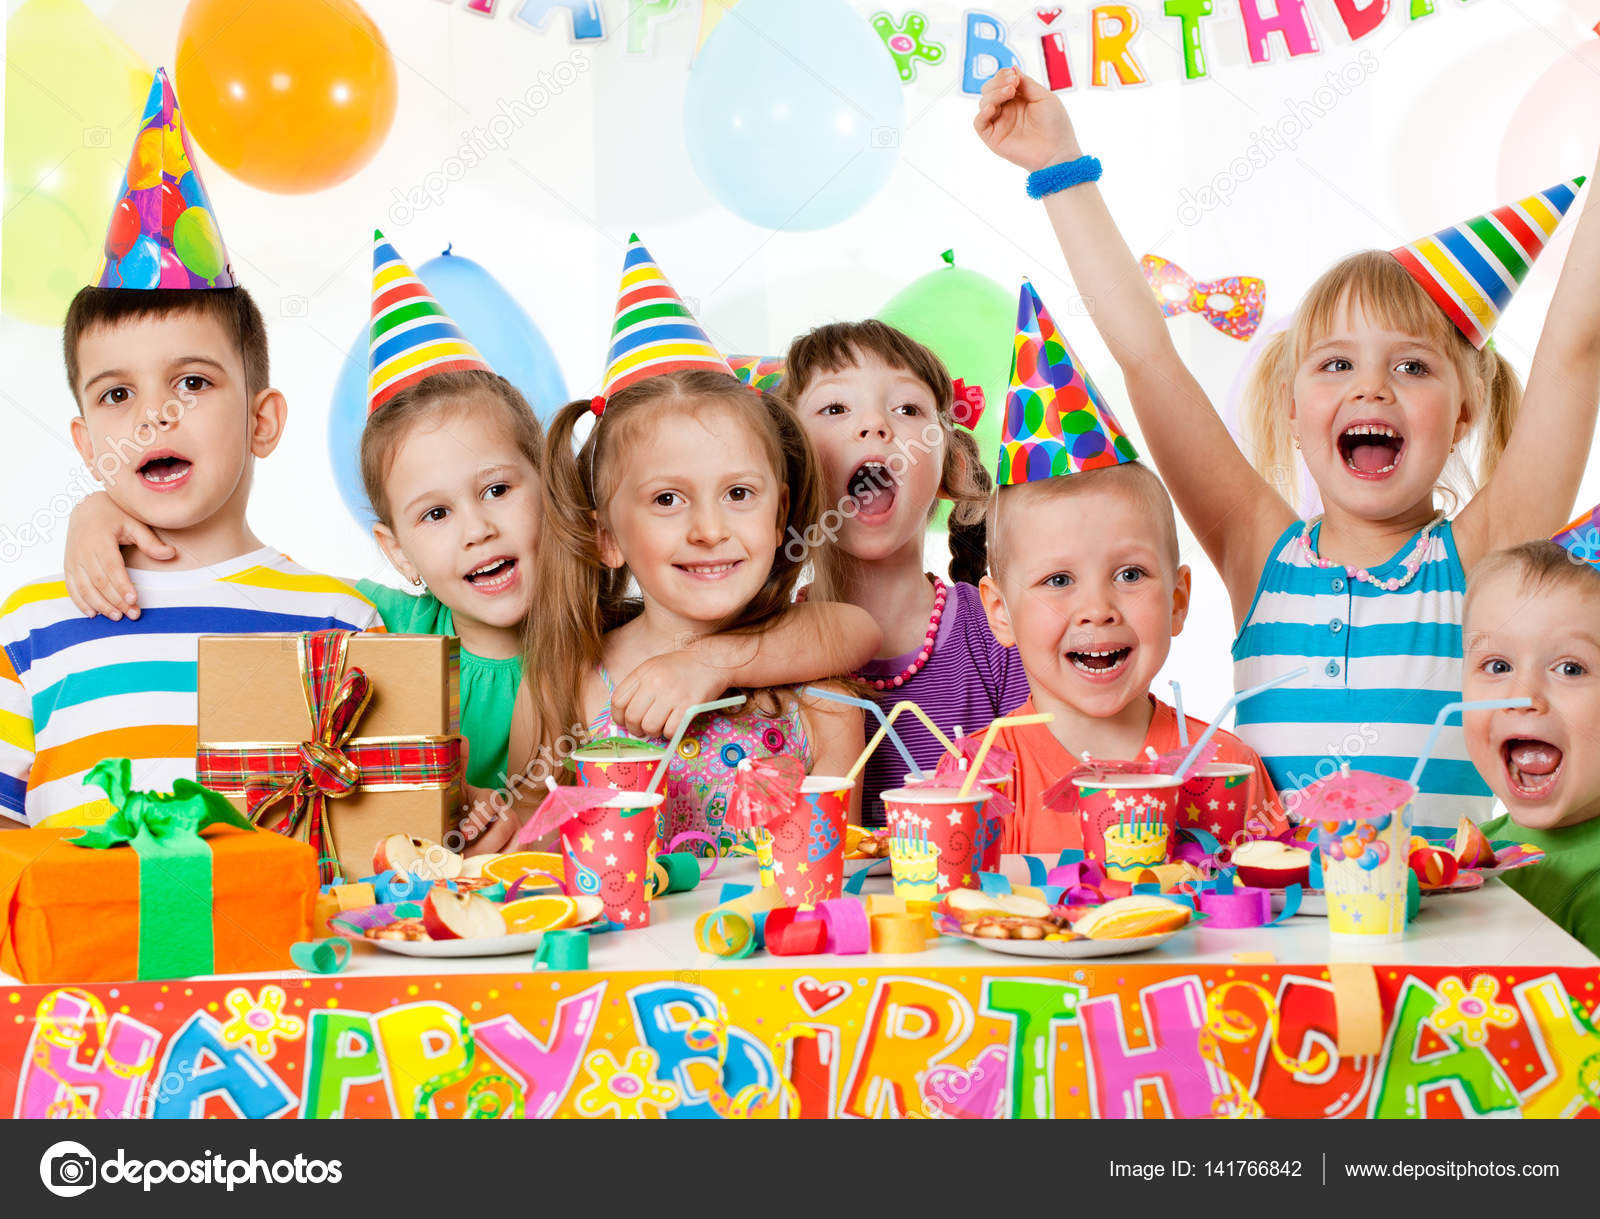 Happy kids birthday Stock Photo by ©yanlev 141766842